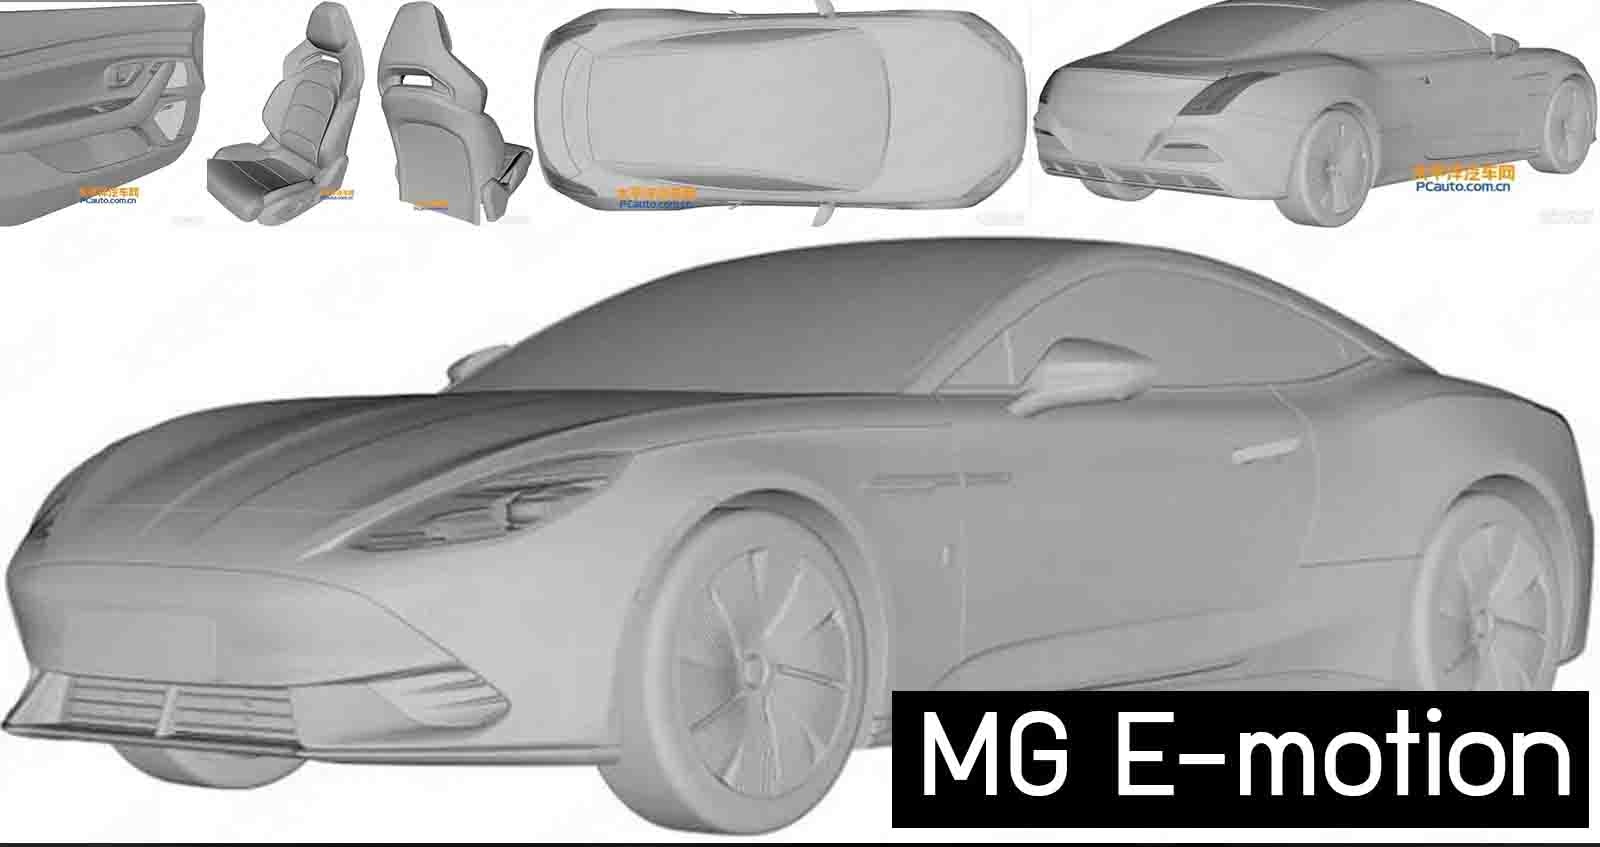 เผยภาพสิทธิบัตร MG E-motion รถสปอร์ต 2 ประตู เตรียมขายสิ้นปีนี้